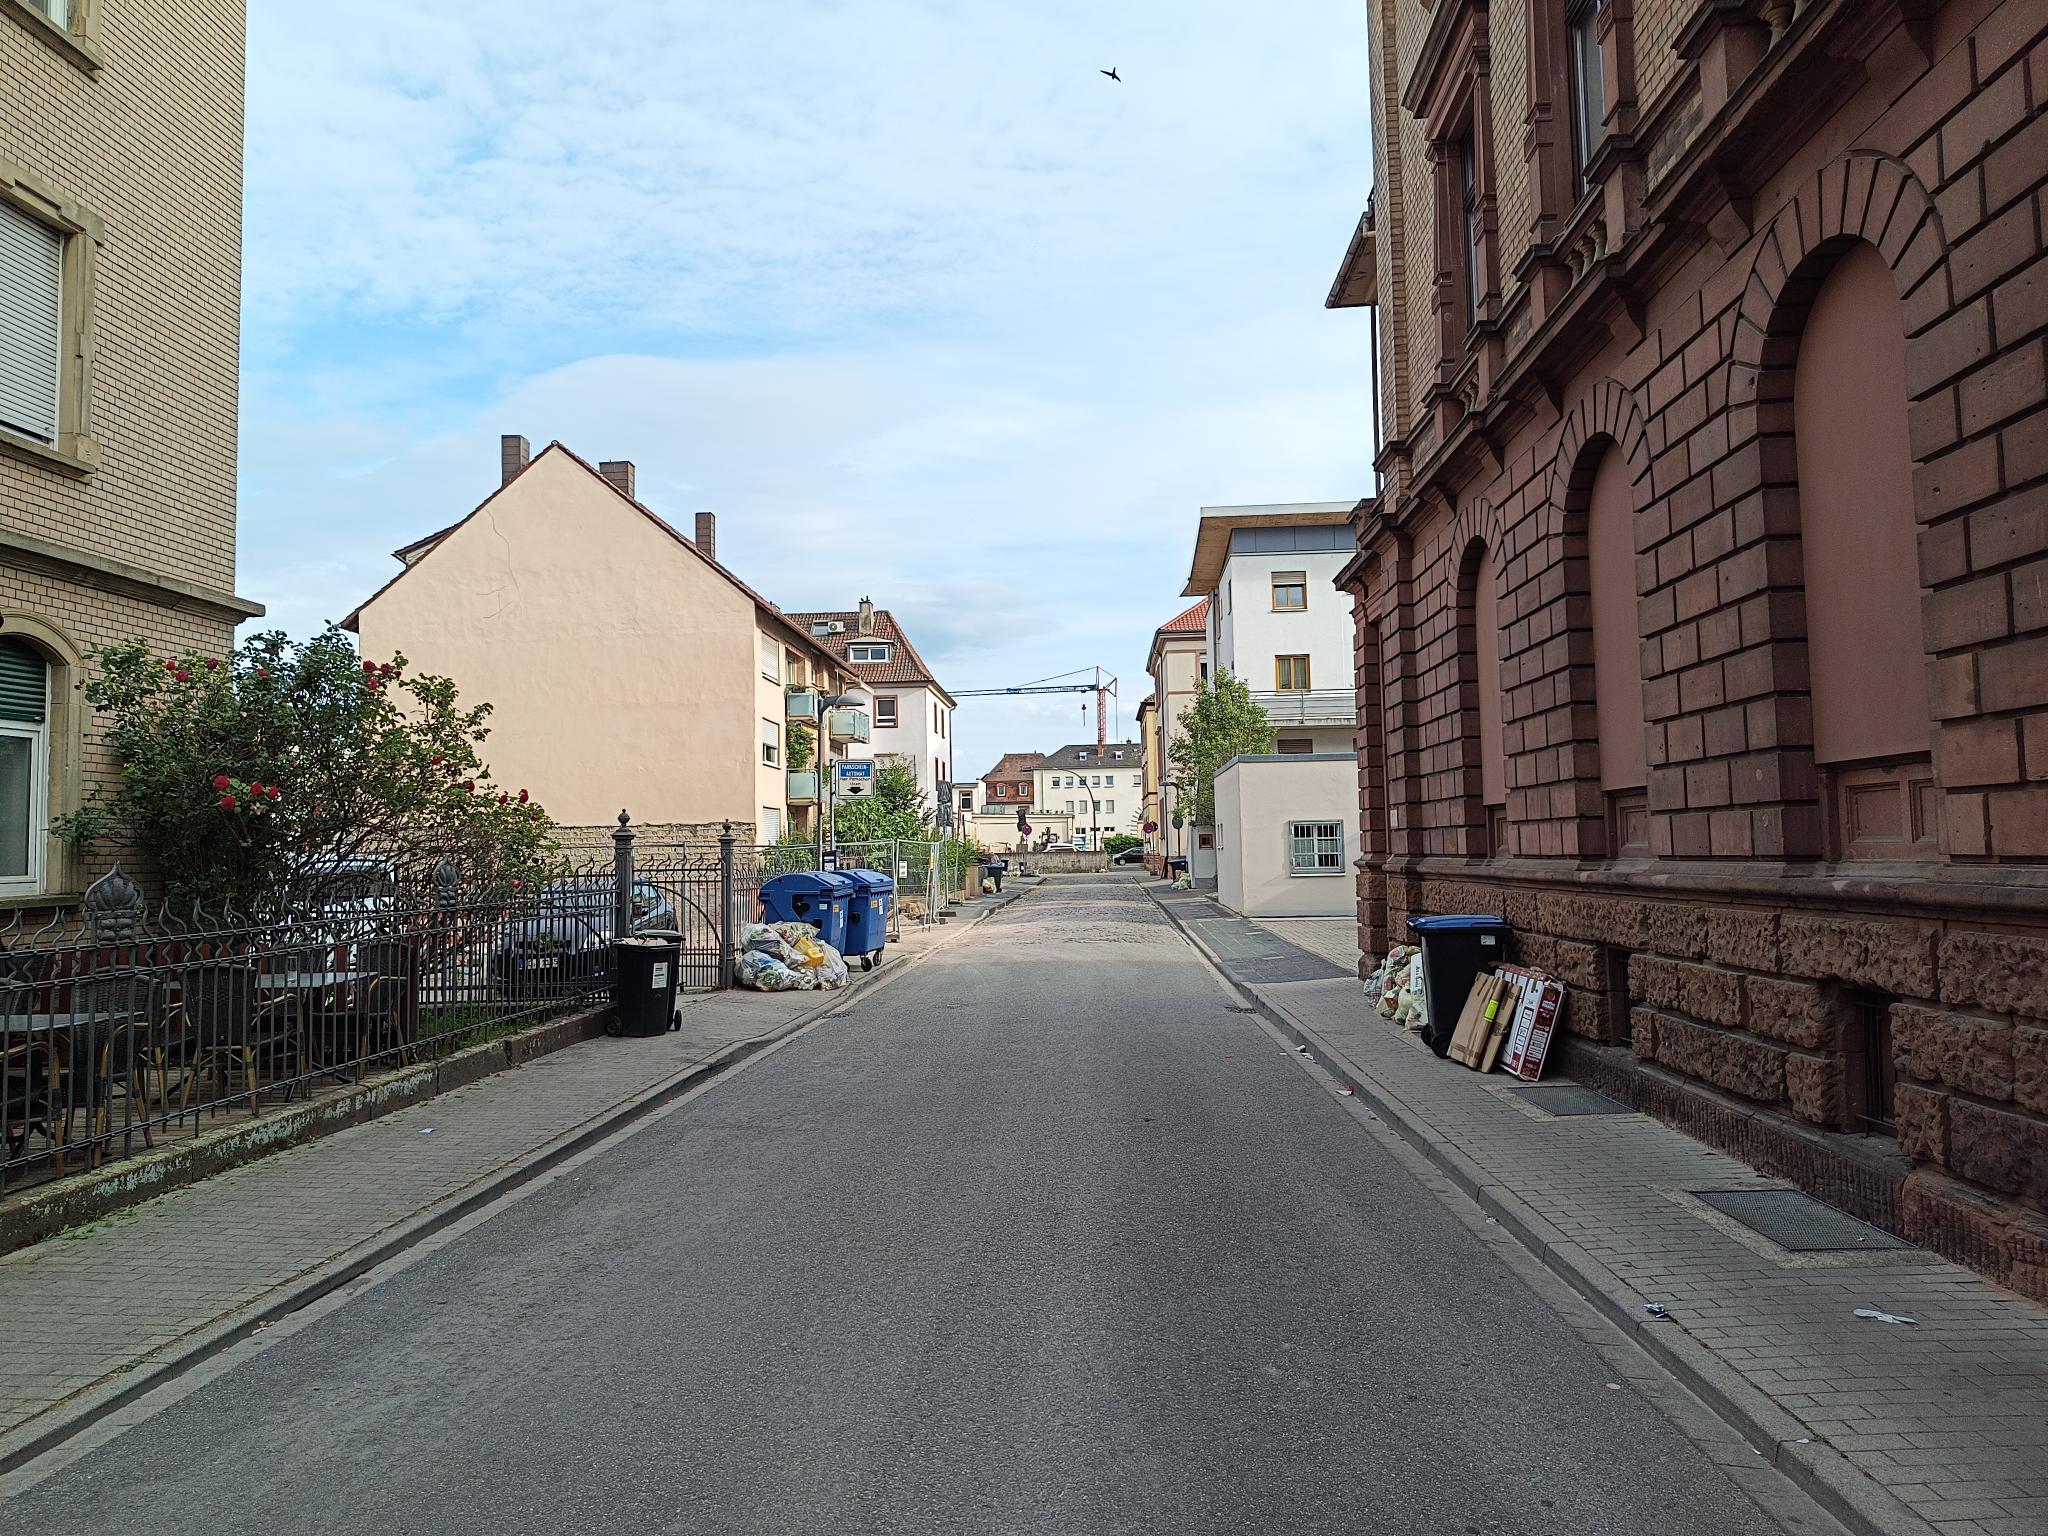 Datei:Landwehrstraße Landau 3.jpeg